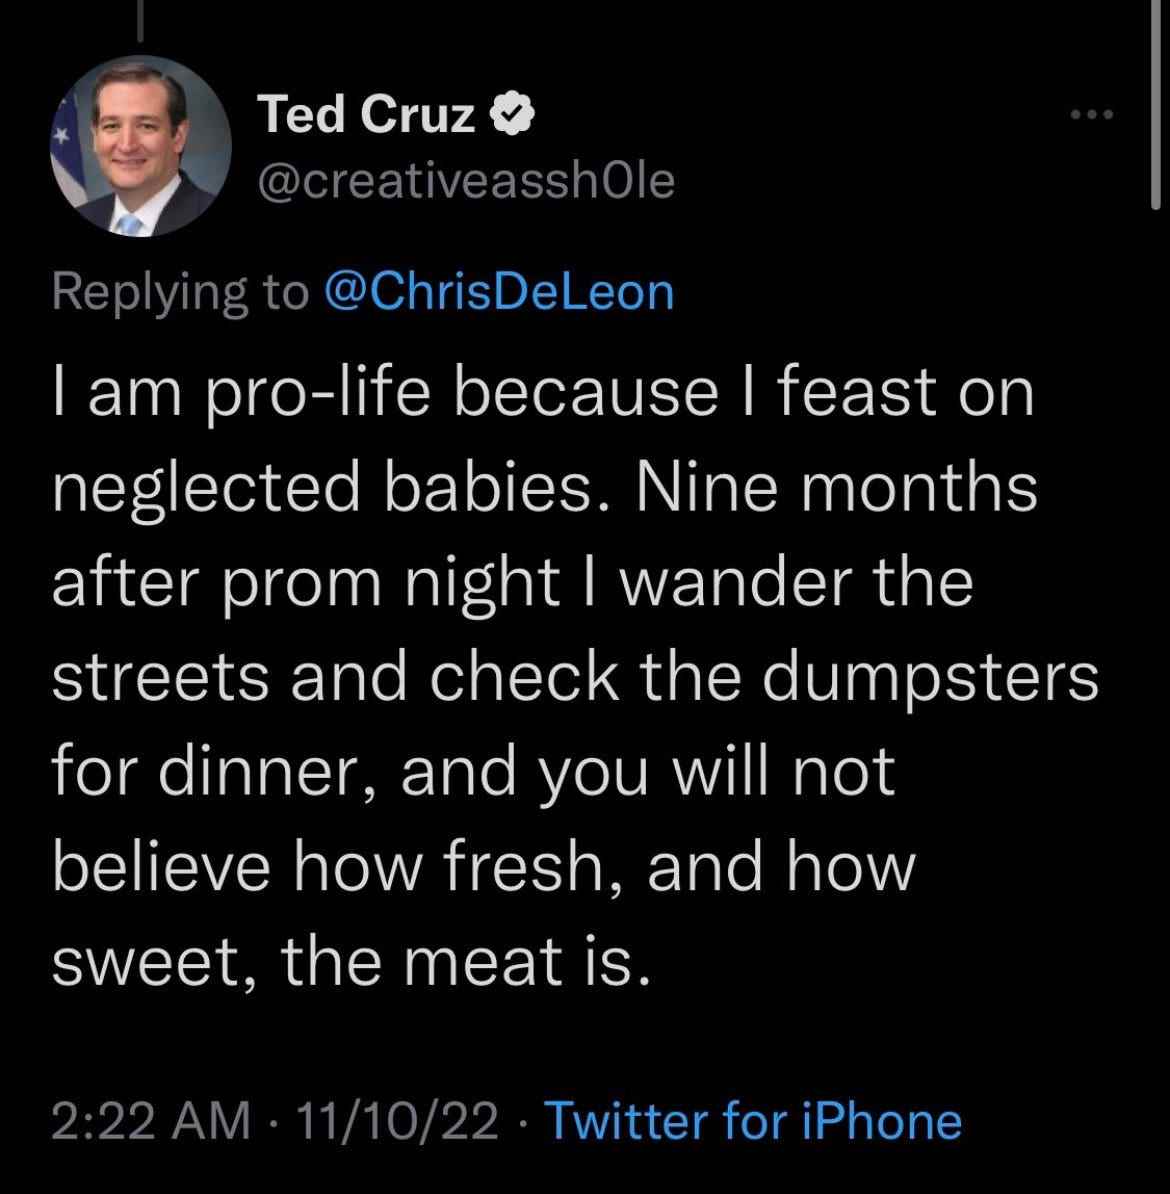 Tweet von einem Account, der sich als US-Senator Ted Cruz ausgibt.